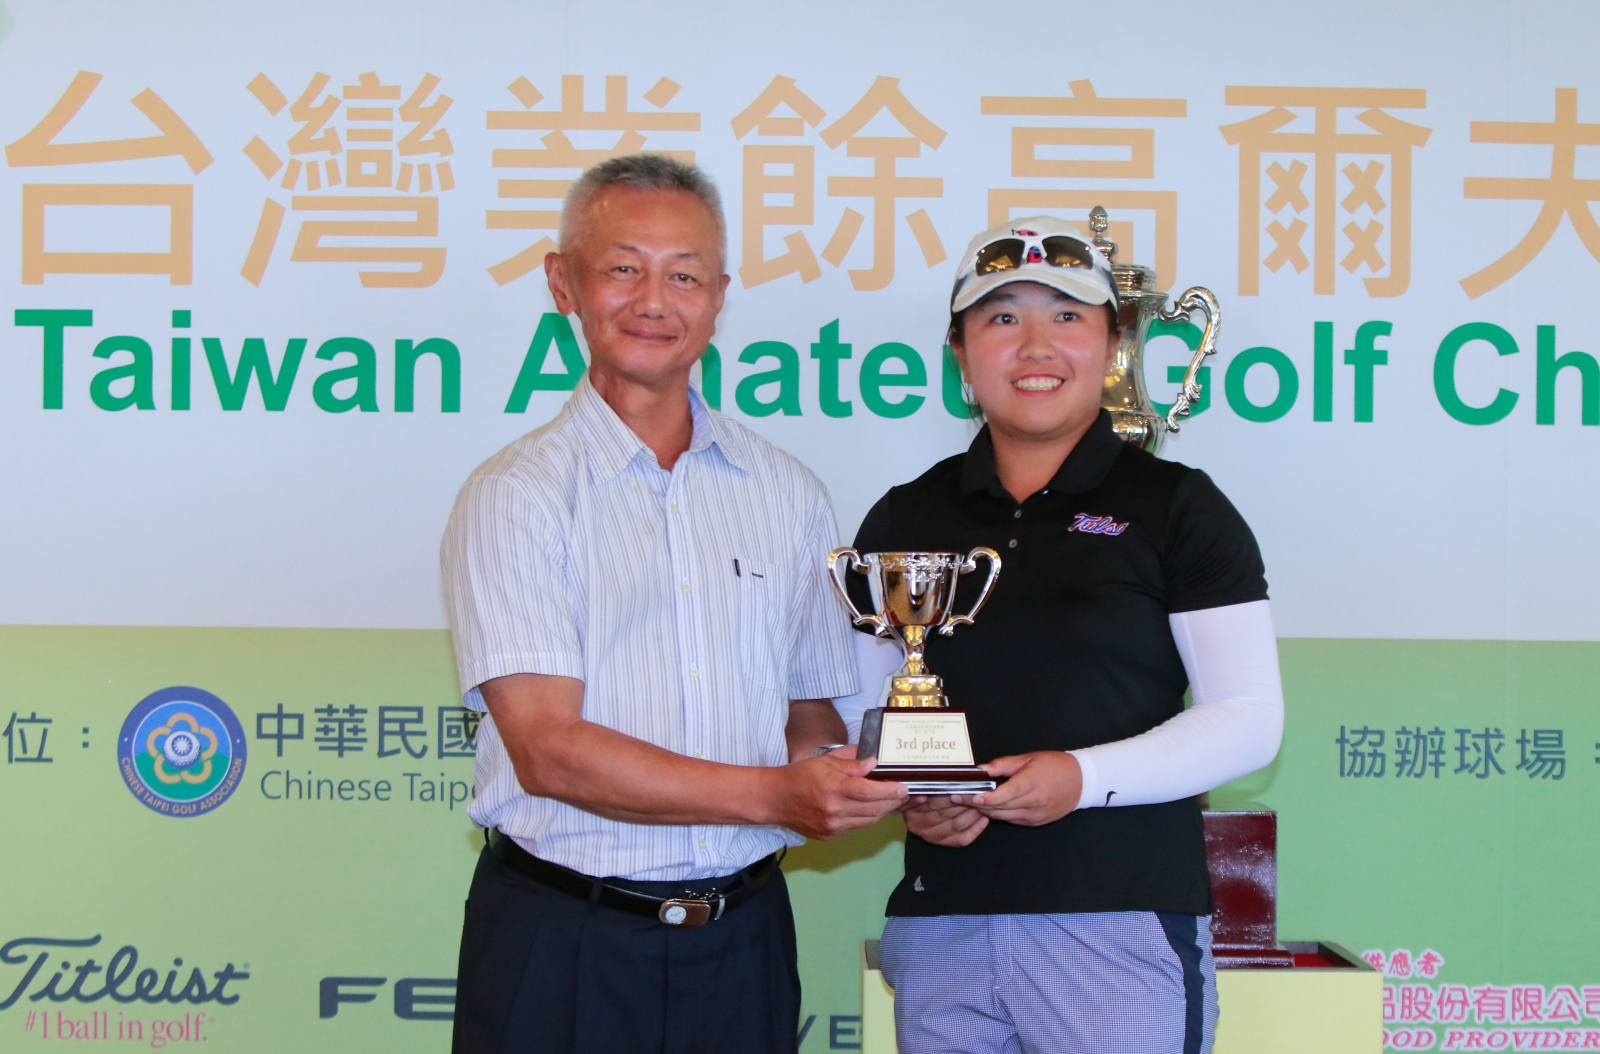 南峰球場總經理楊崇志頒發女子組季軍獎盃給台灣選手曾彩晴。